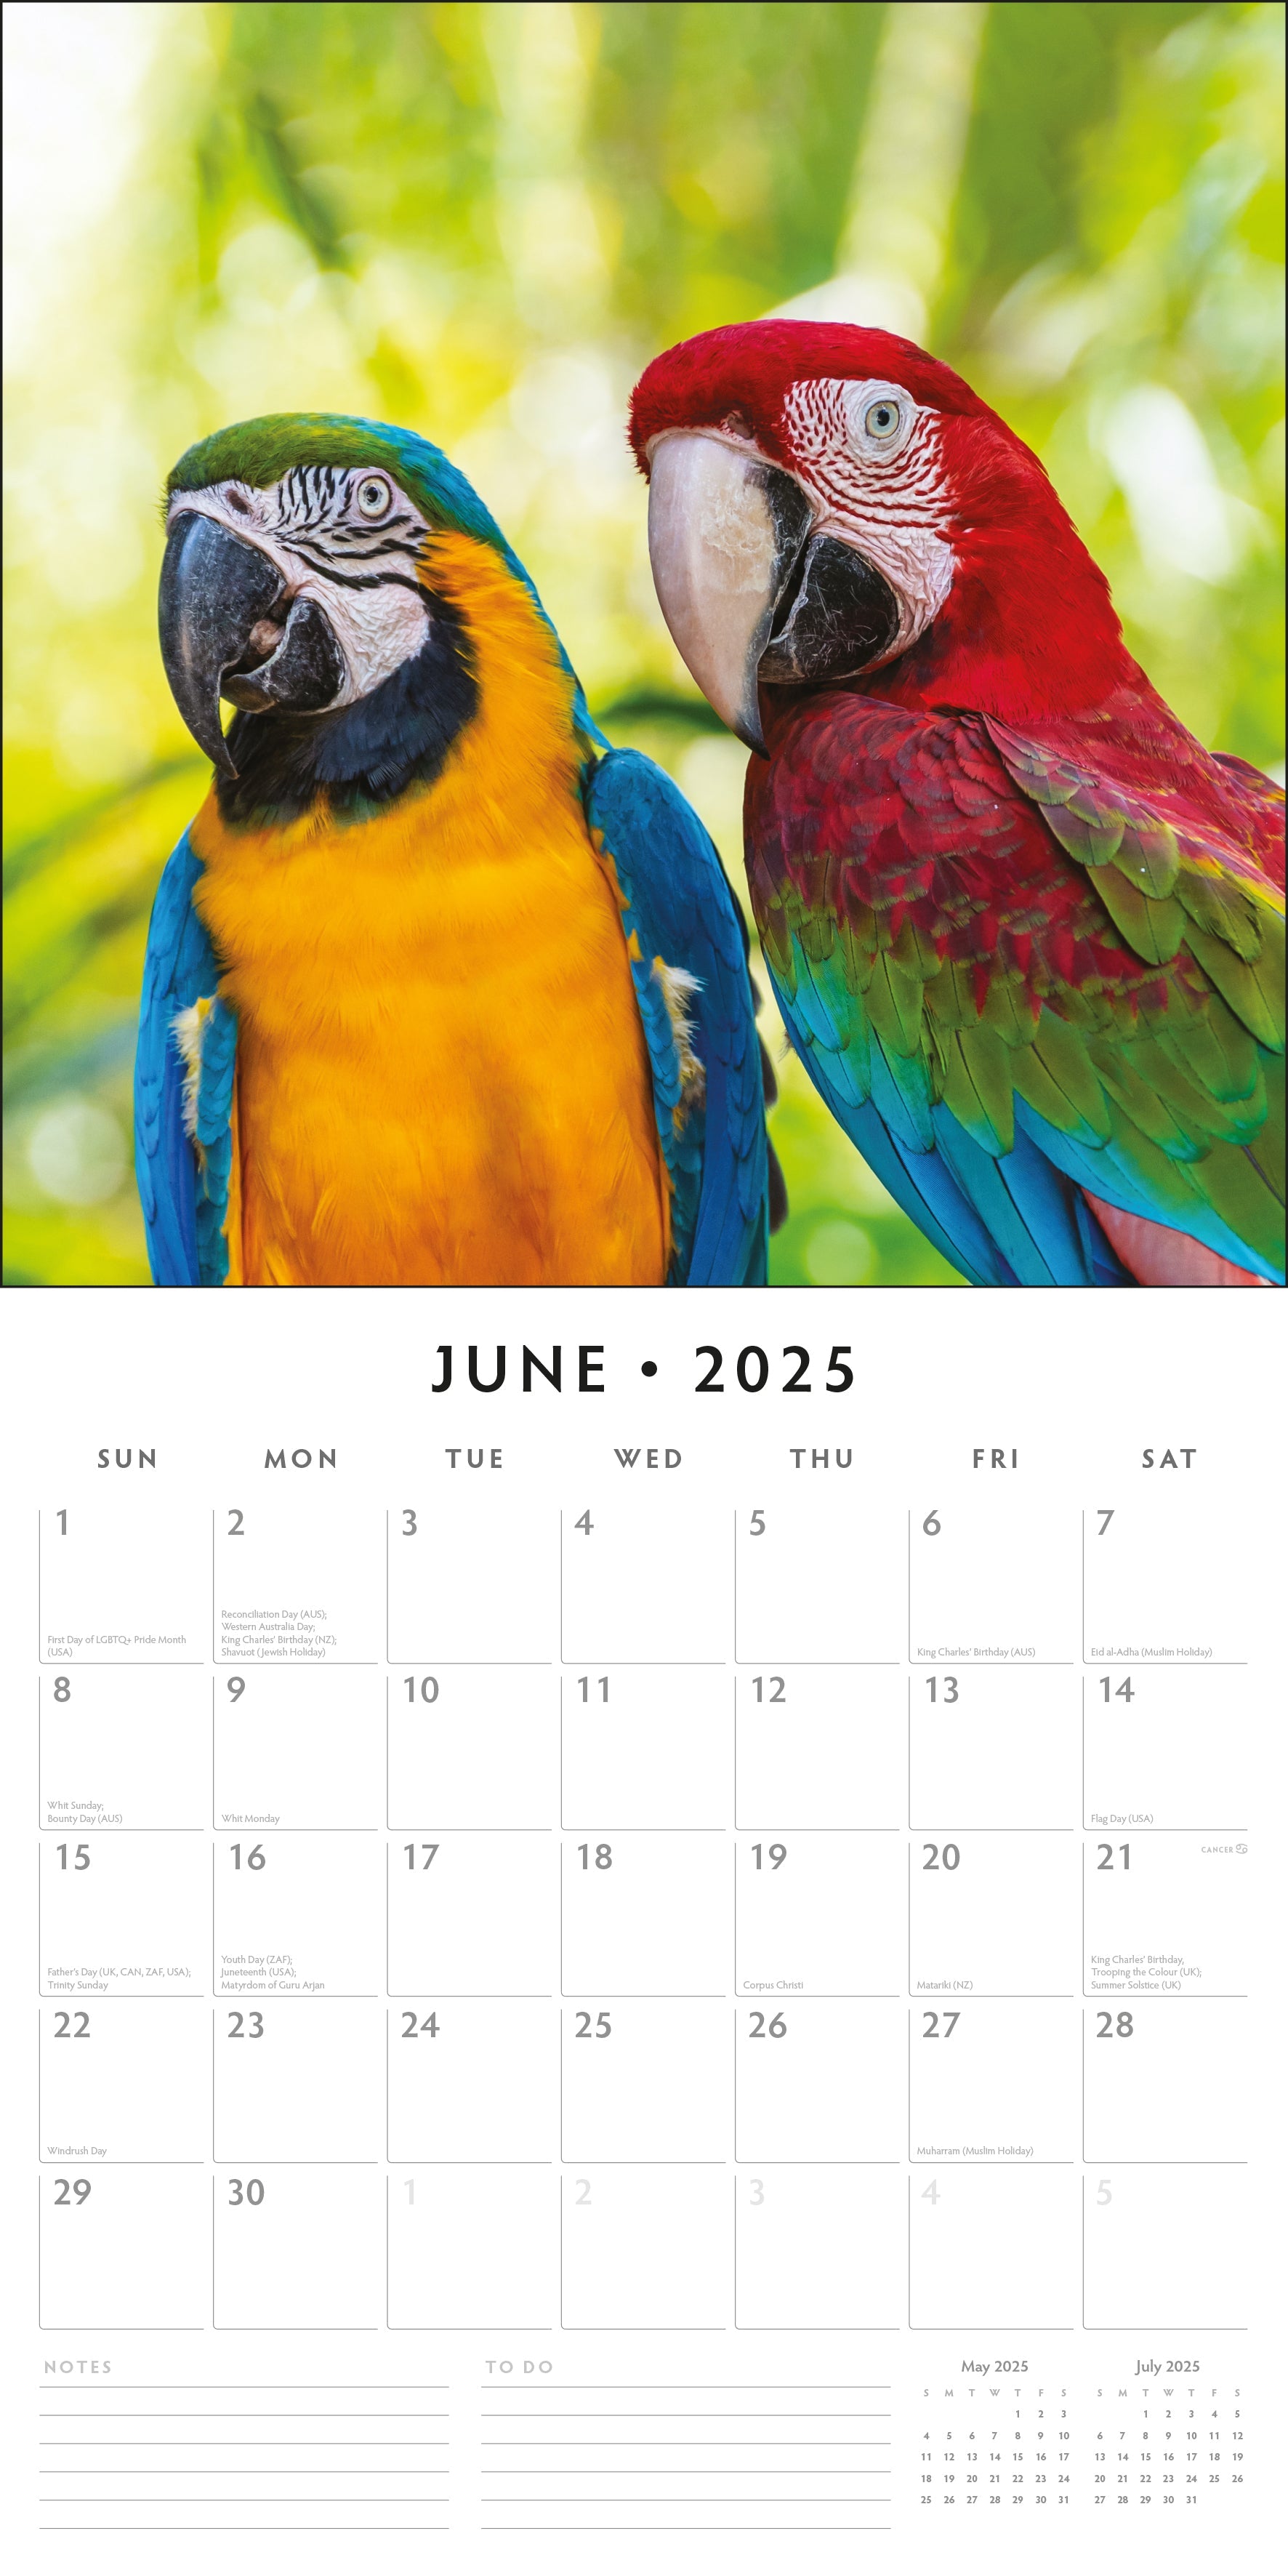 2025 Parrots - Square Wall Calendar